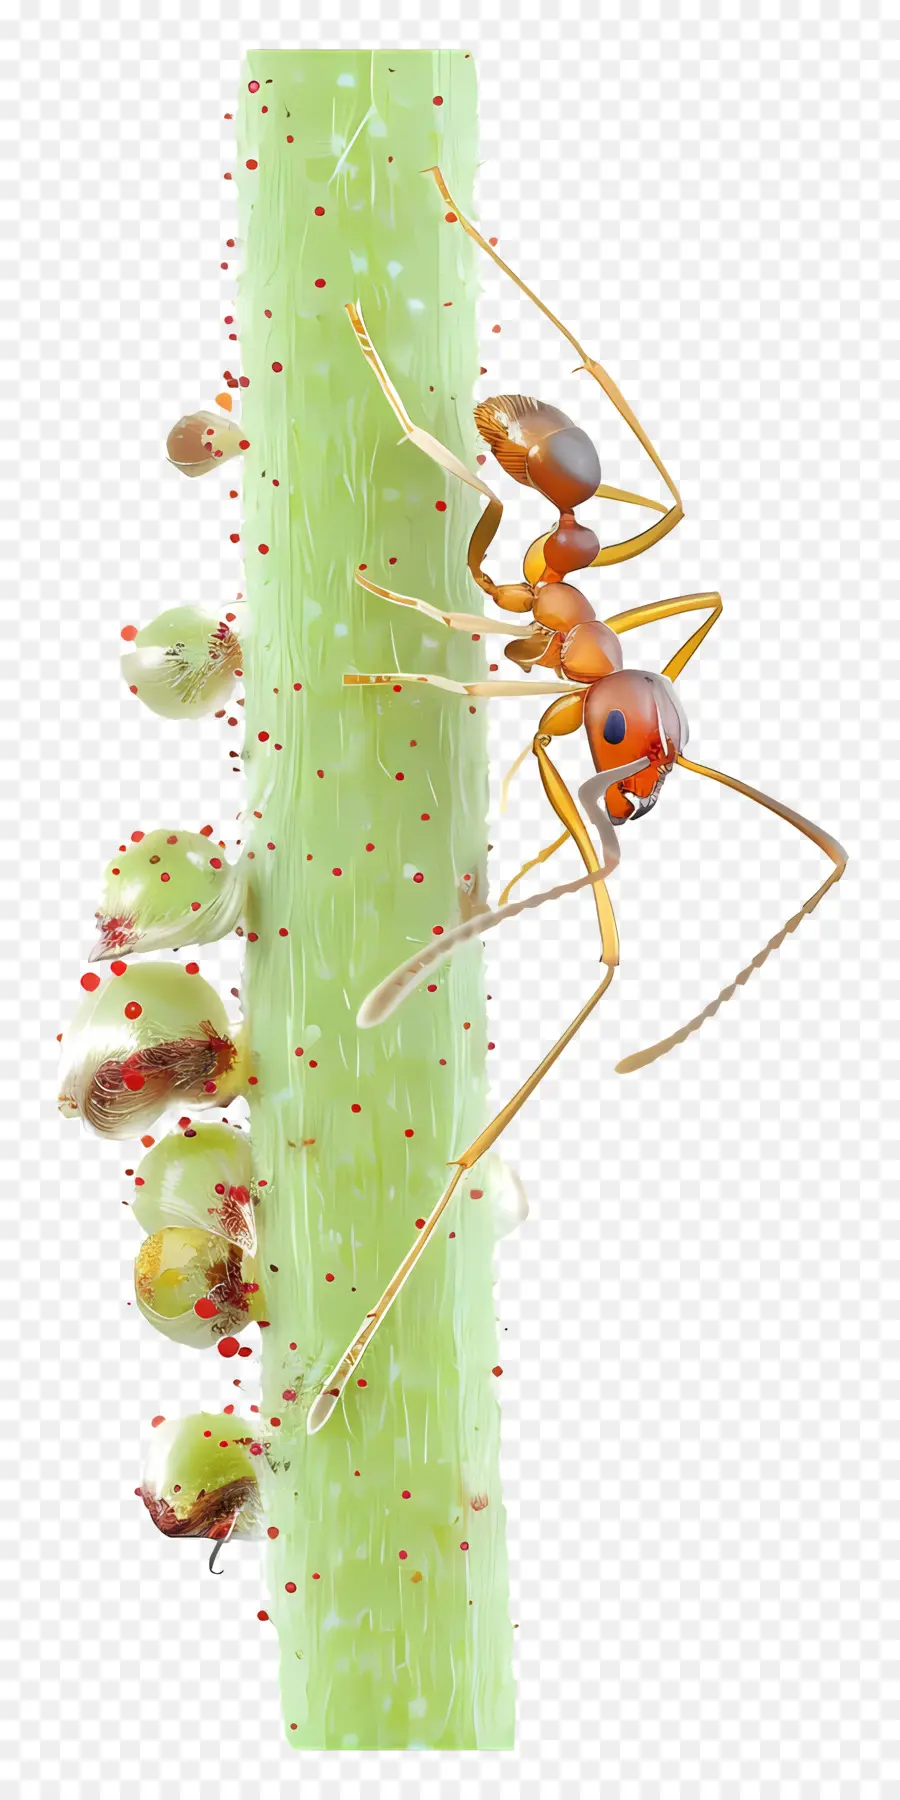 Ant Red Ant Côn trùng Thân cây - Red Ant bò trên thân cây xanh